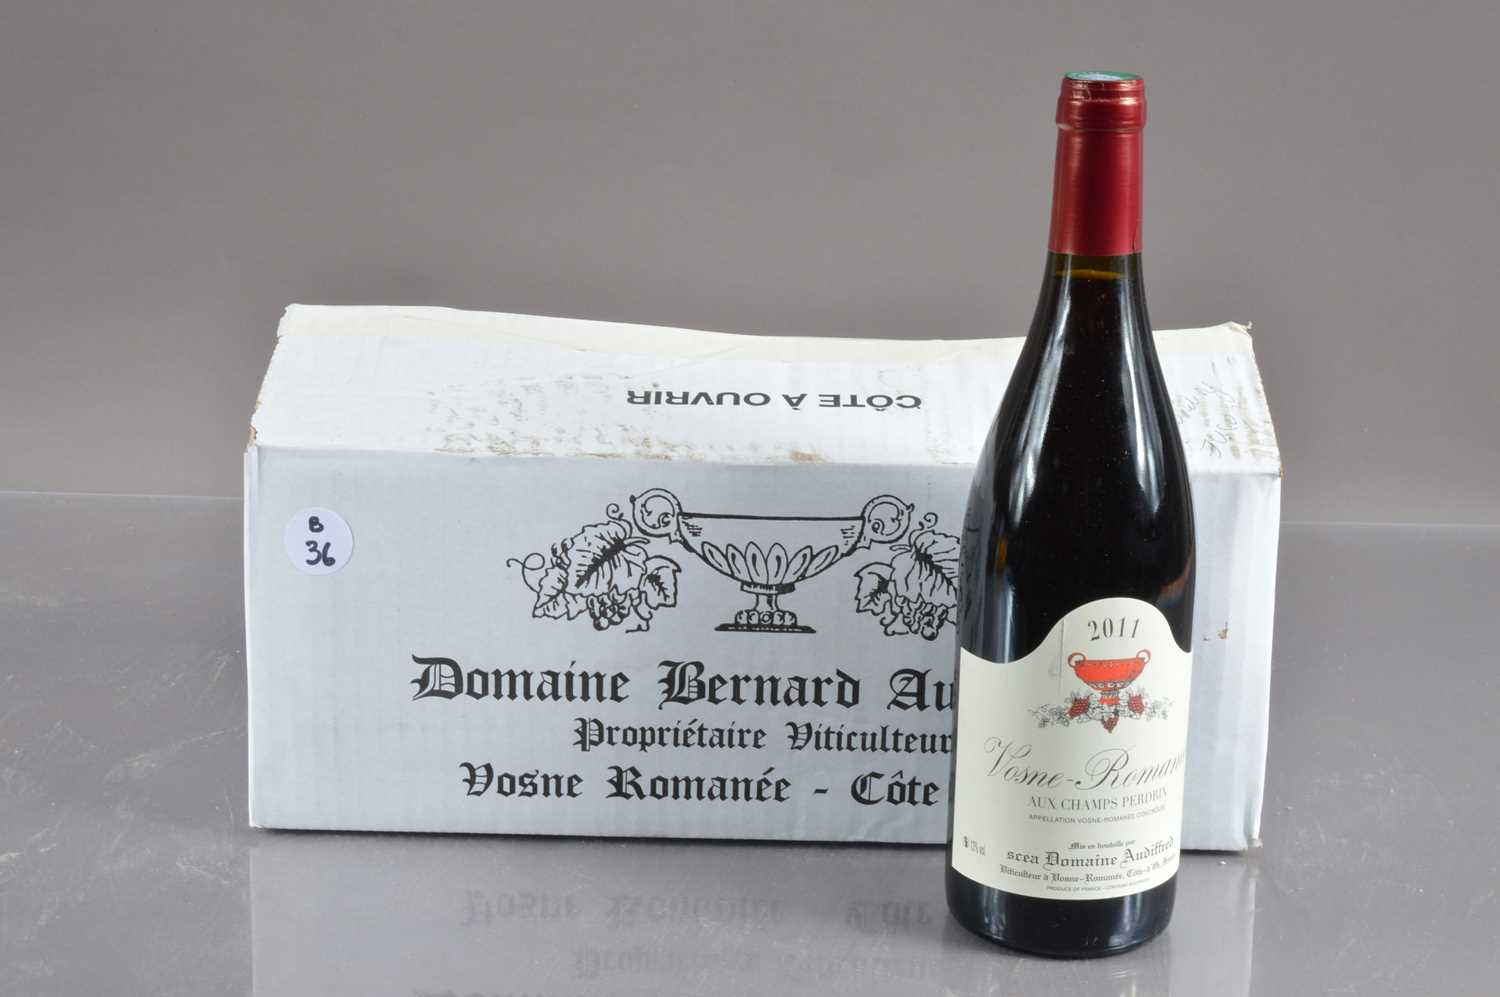 Lot 36 - Six bottles of Vosne Romanee 'Aux Champs Perdrix' 2011